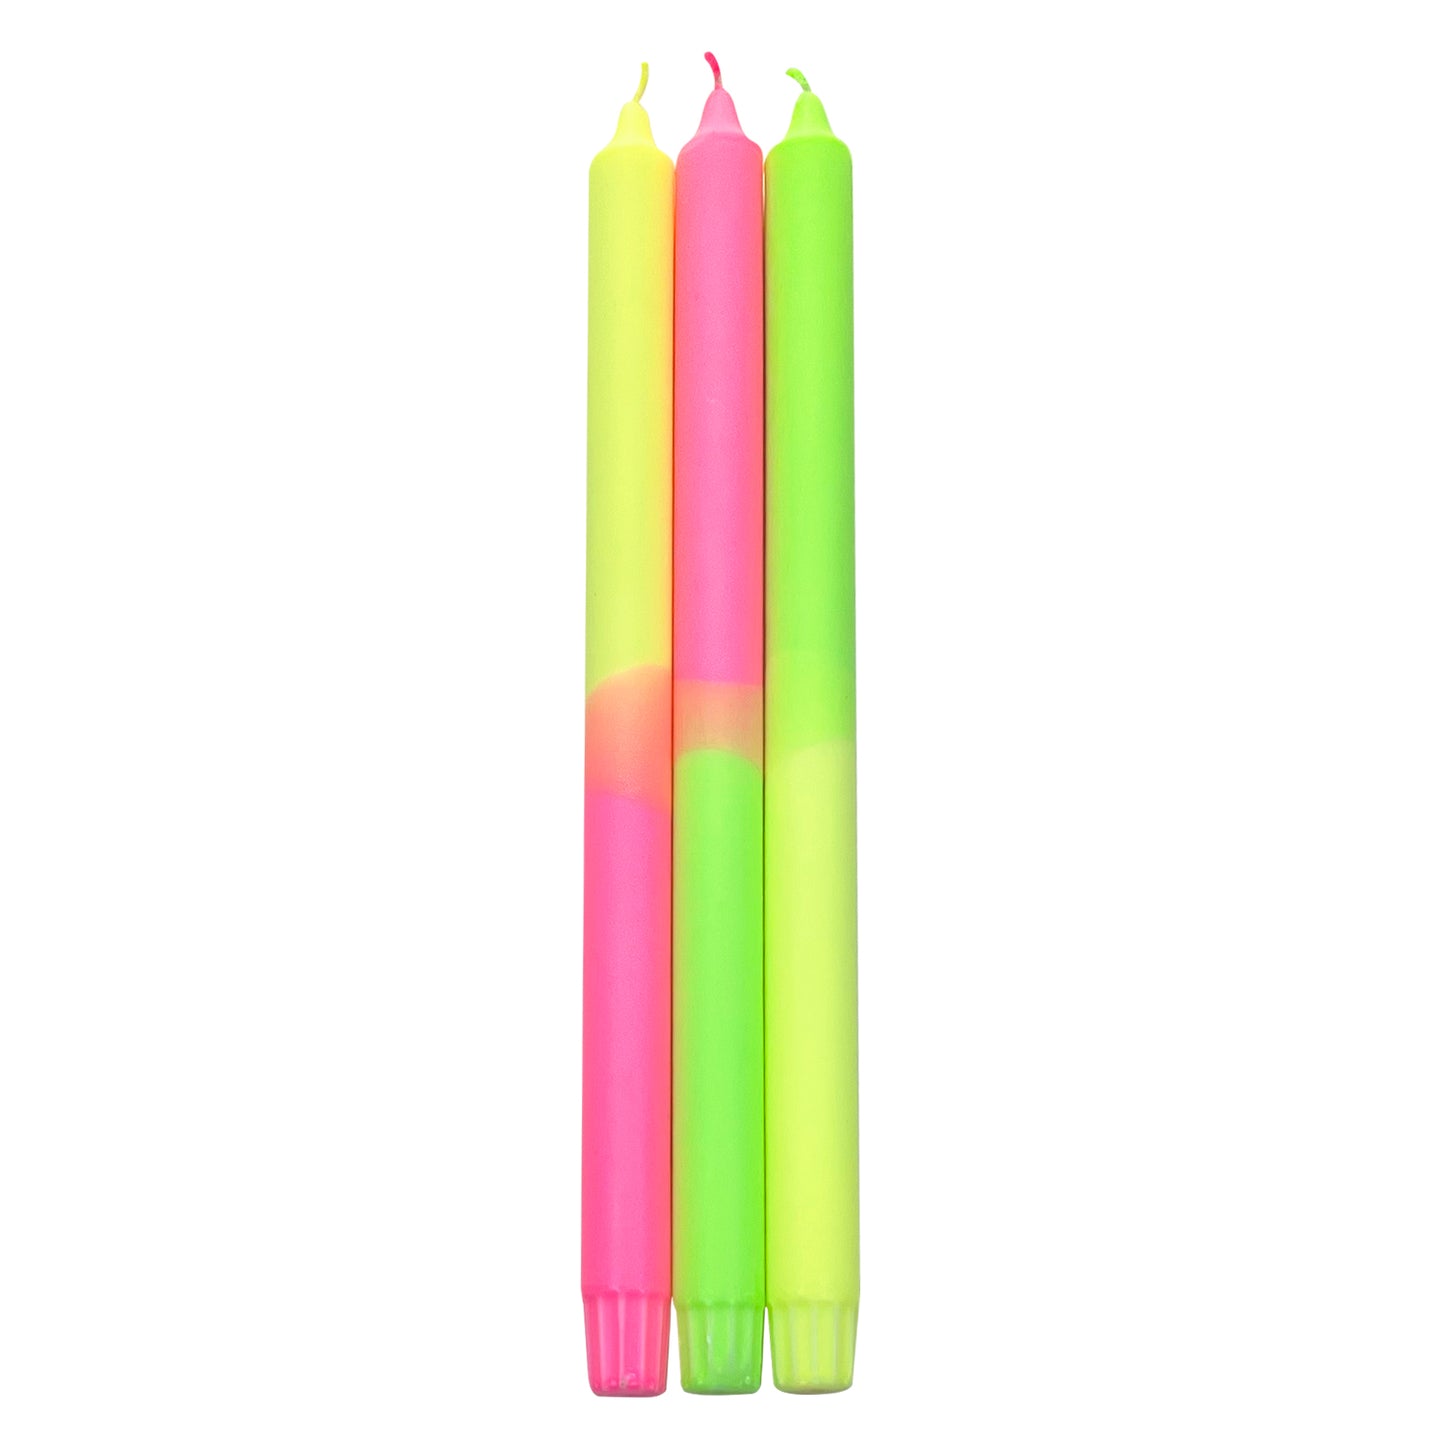 Dip Dye Neon 35 cm - XL  - Set of 3 - Candle